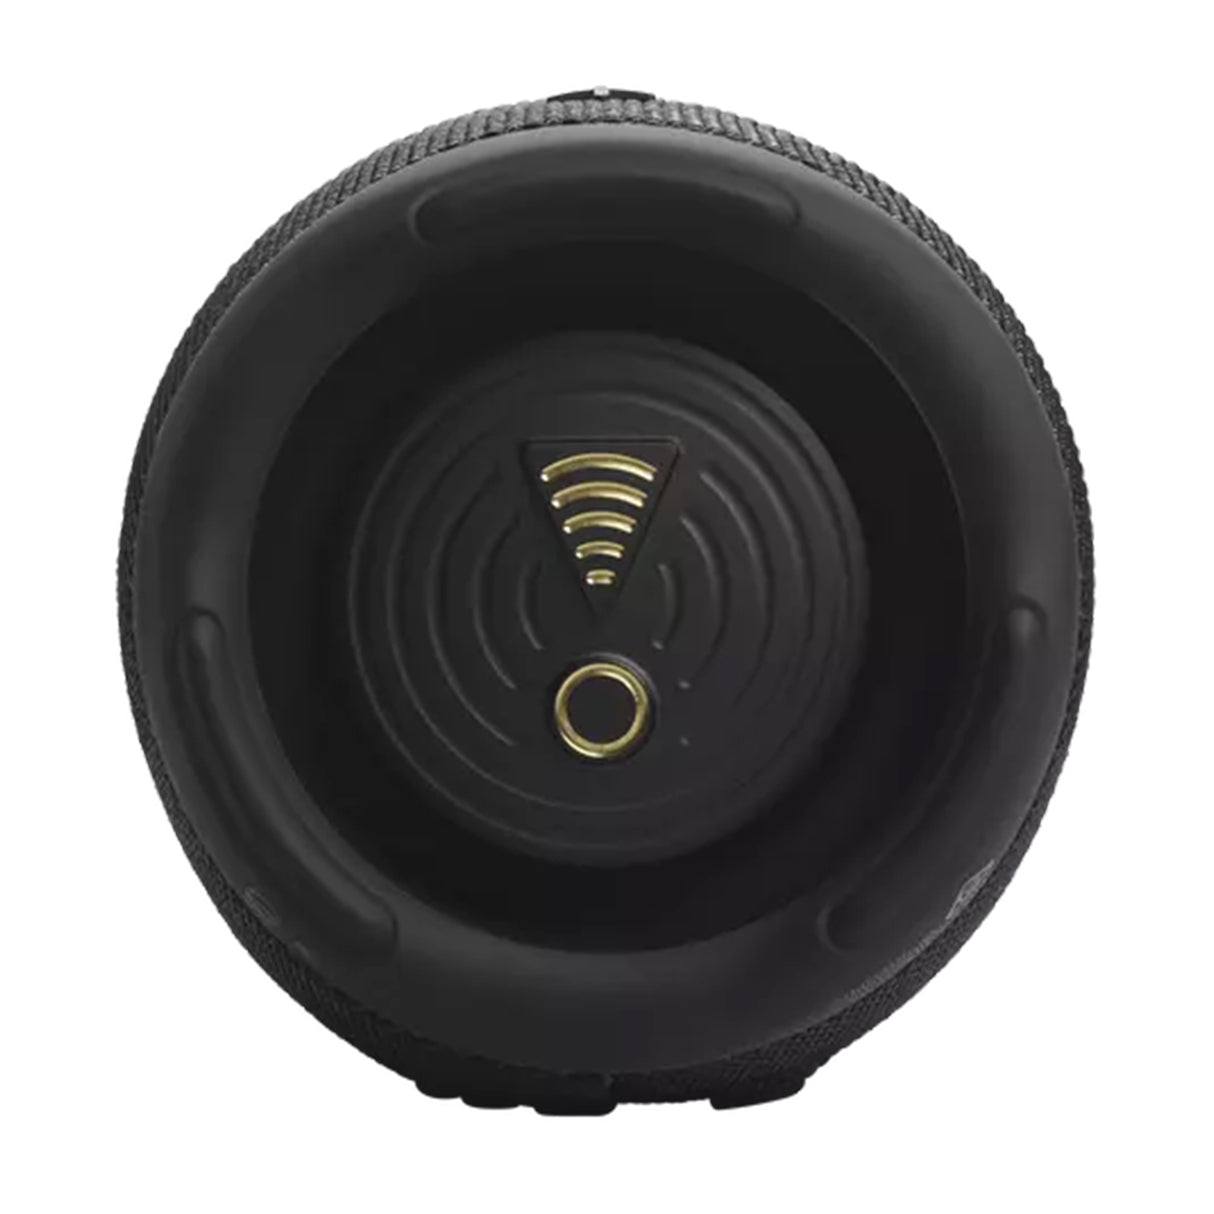 JBL Charge 5 Wi-Fi - Waterproof & Dustproof Portable Bluetooth Speaker (Black)